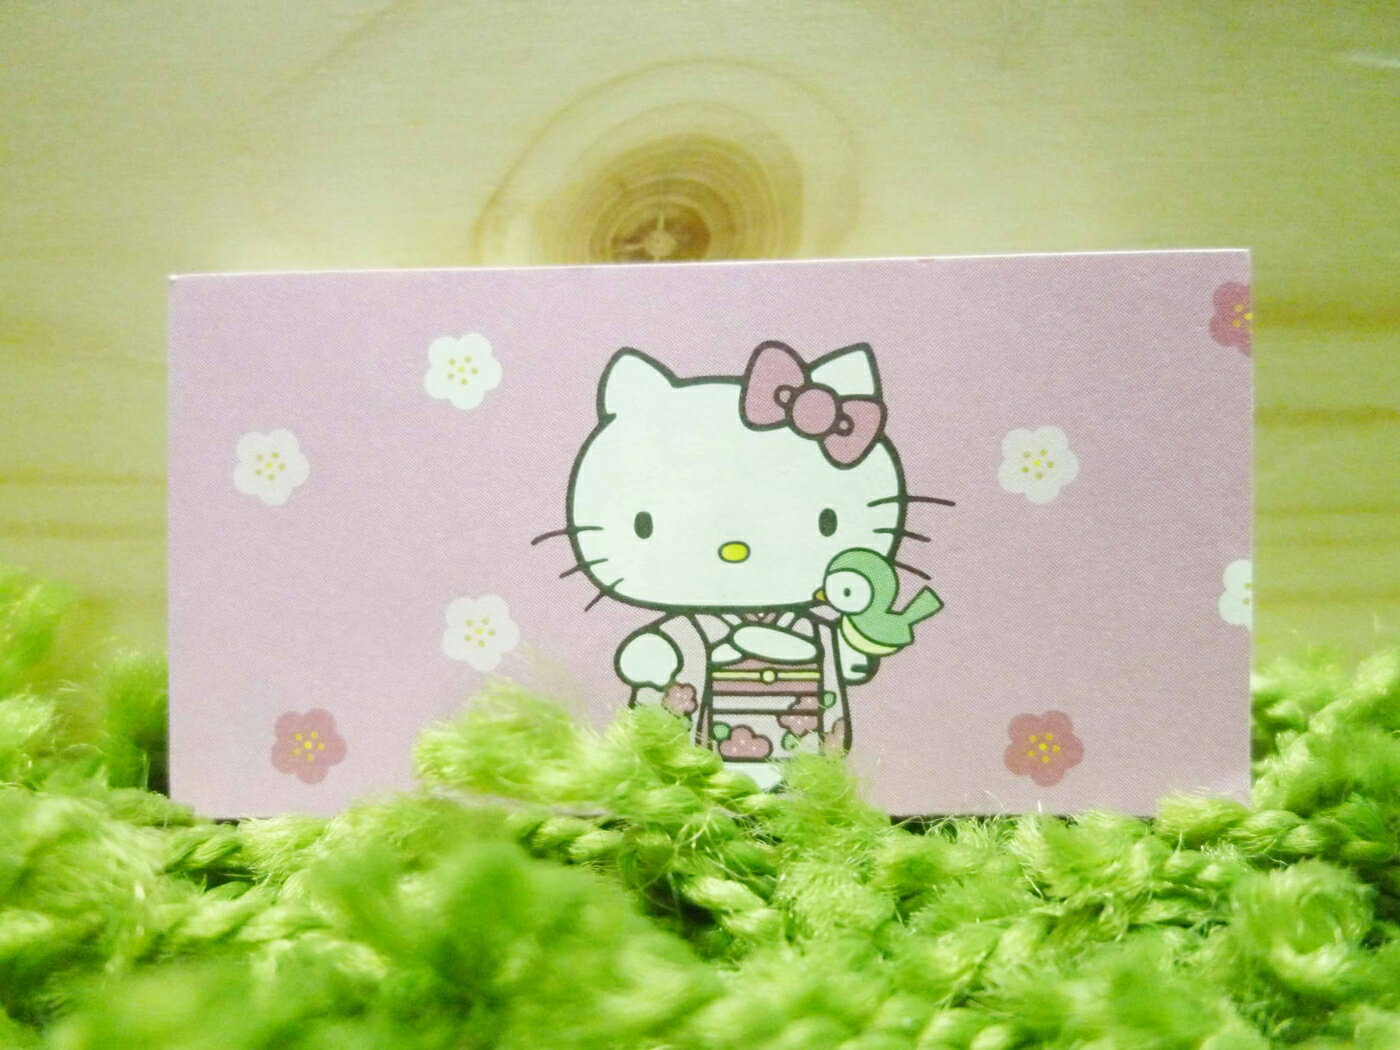 【震撼精品百貨】Hello Kitty 凱蒂貓 便條紙-和服圖案【共1款】 震撼日式精品百貨